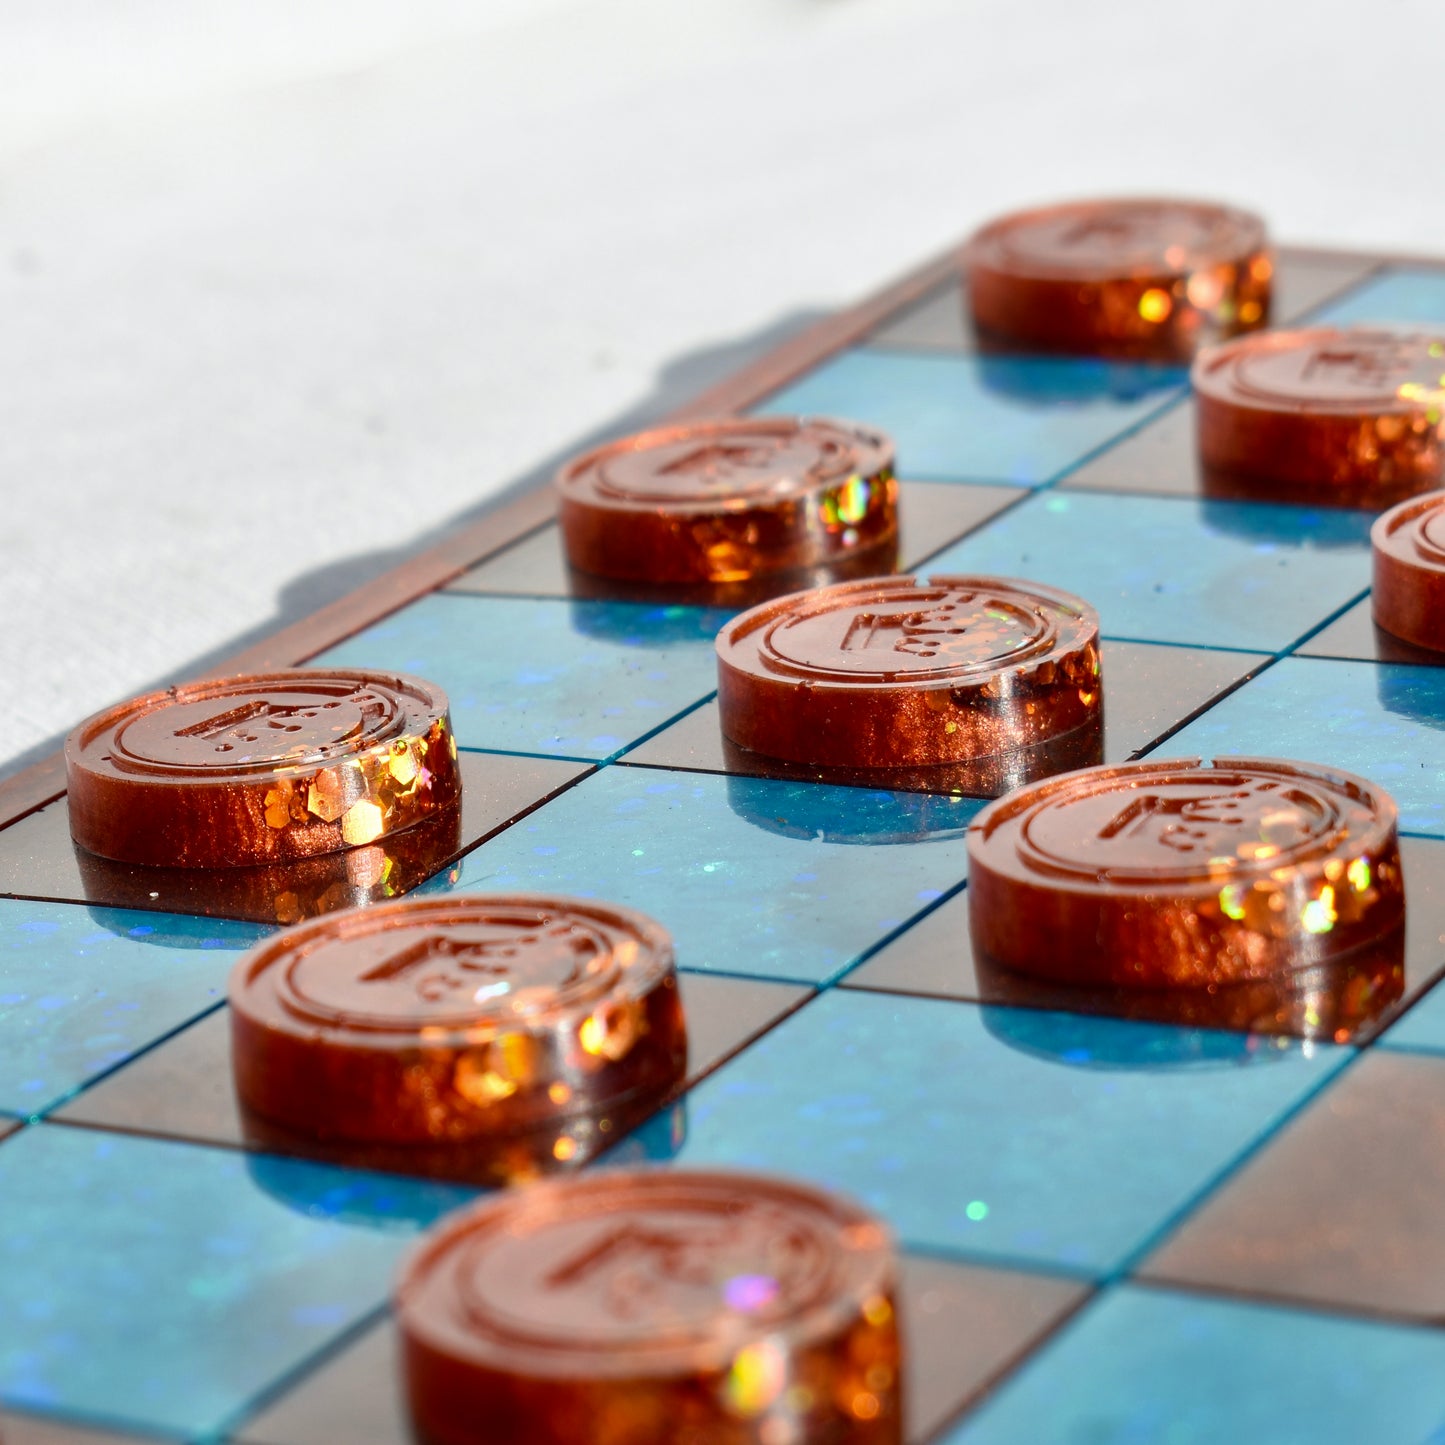 Premium Chess & Checkers Set • Sleek Custom Chess & Checkers Set